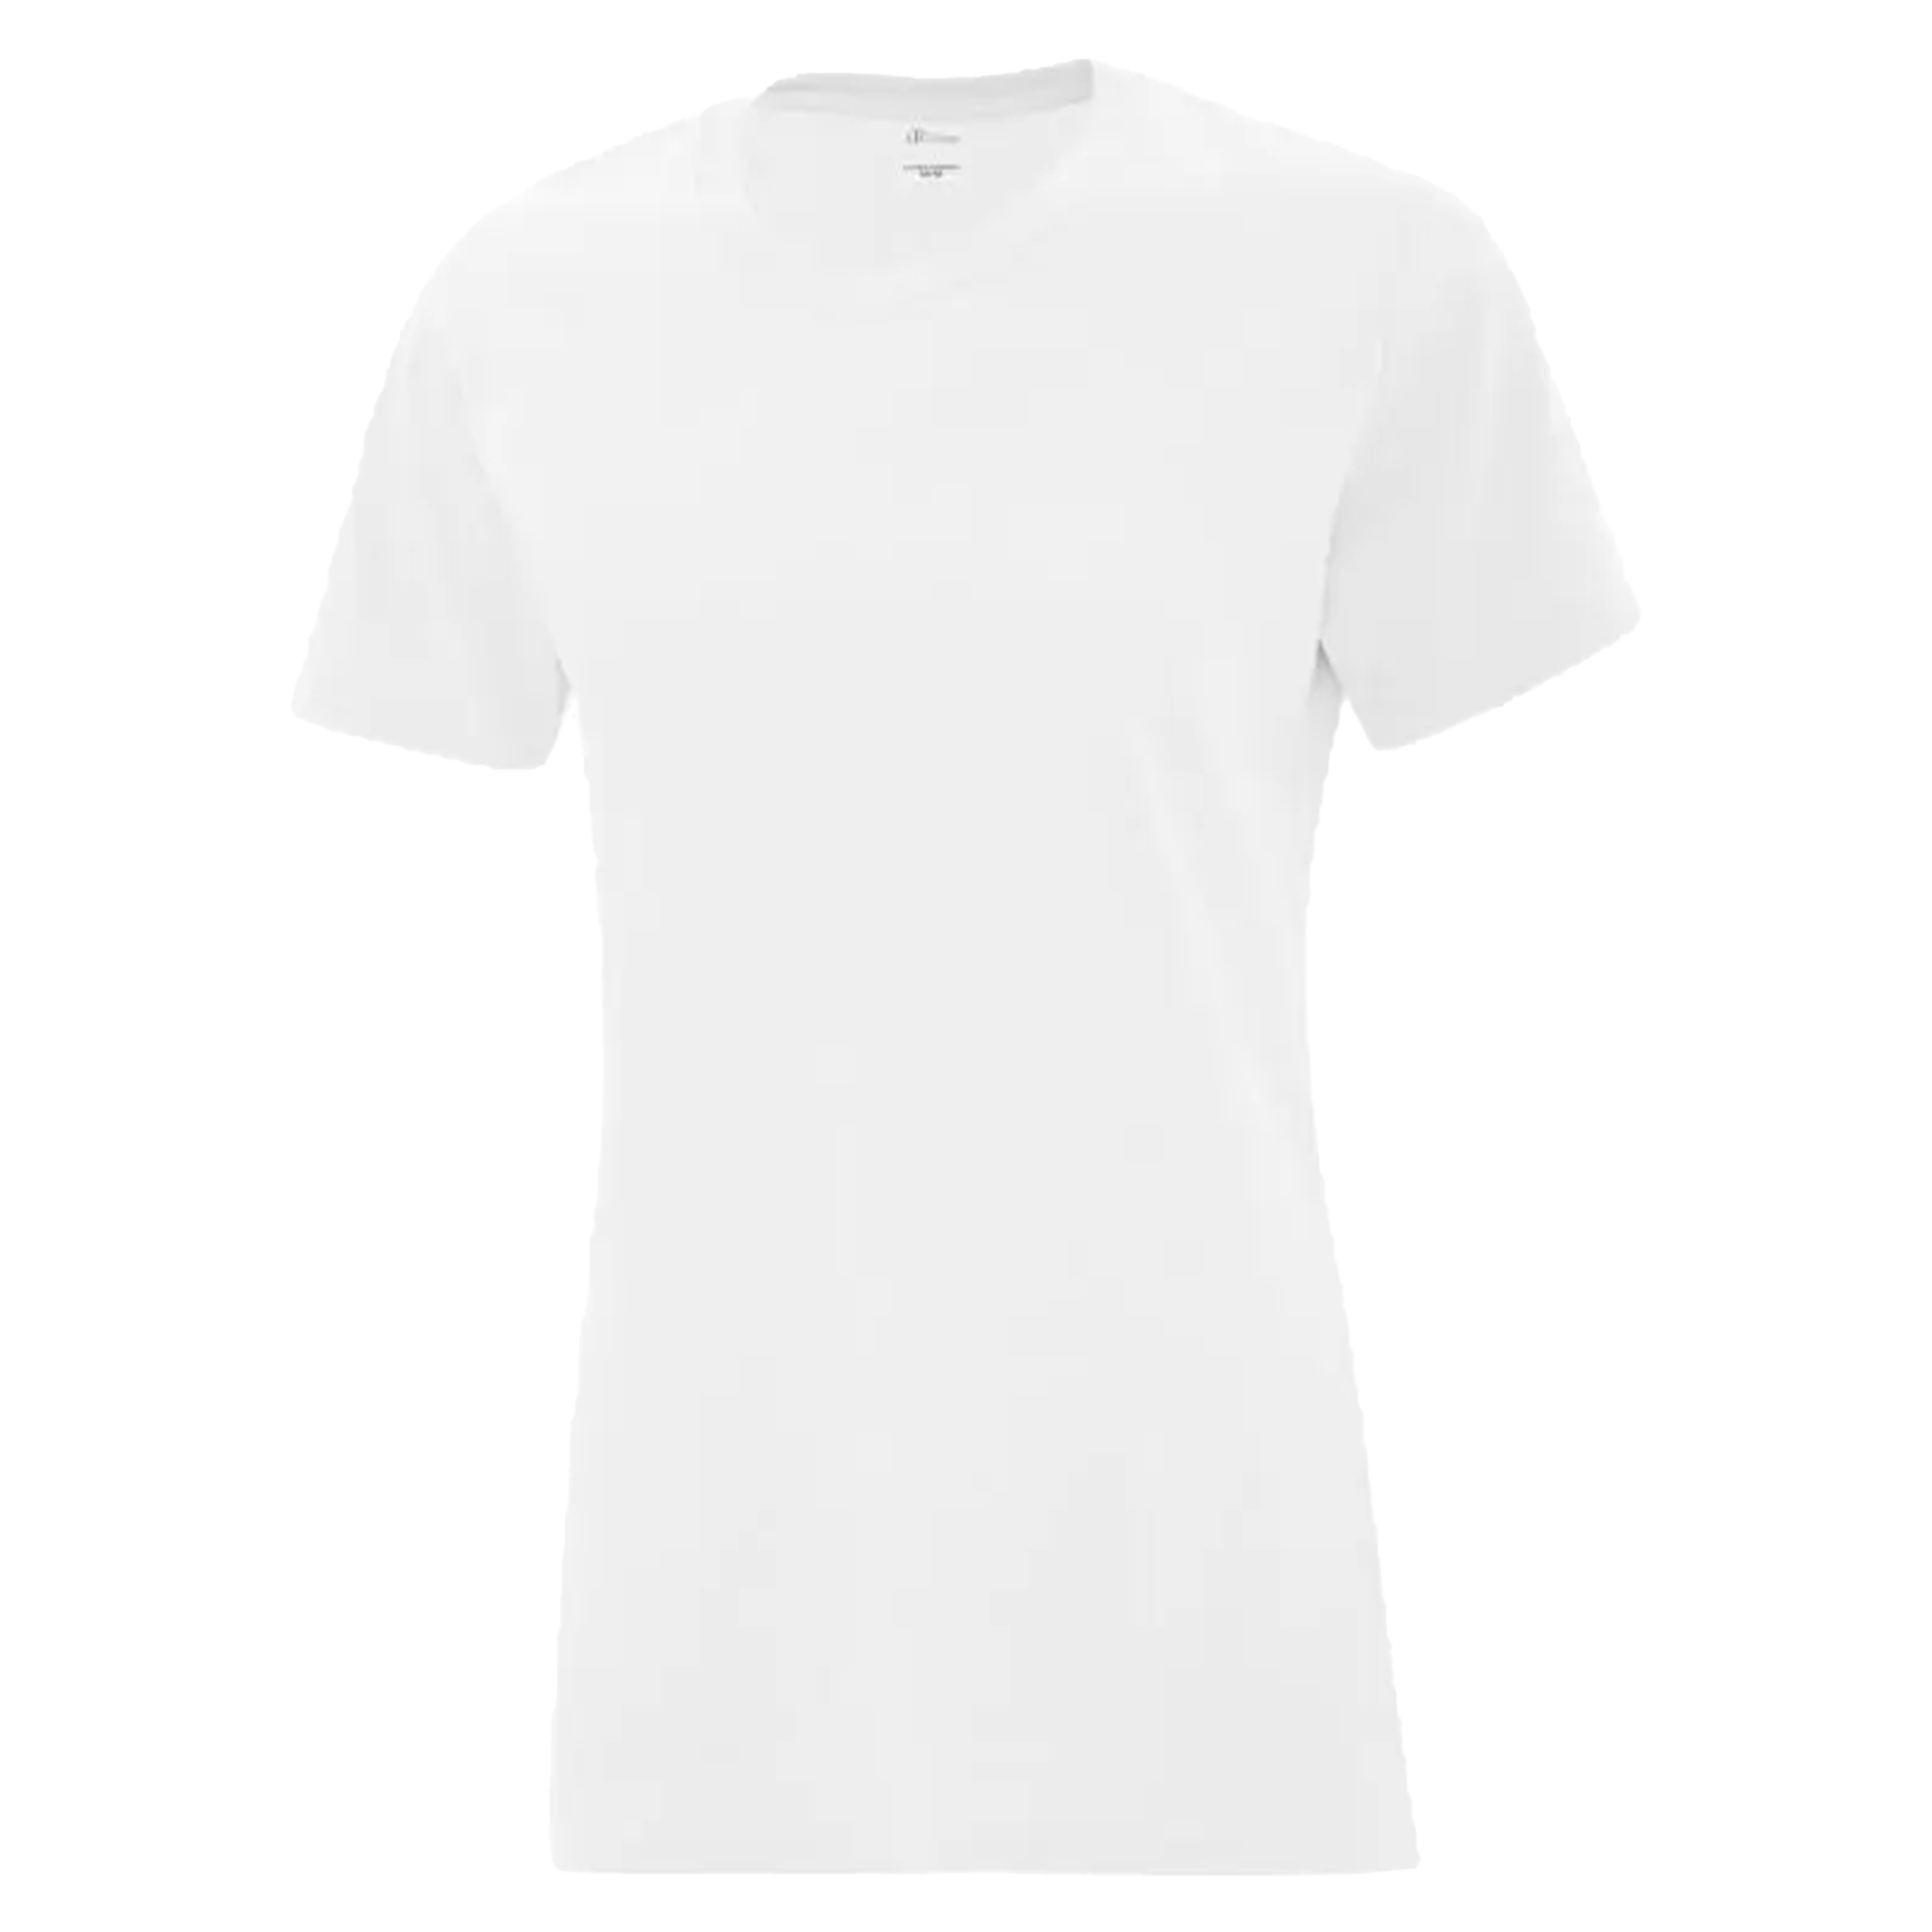 ATC Everyday Cotton T-Shirt - Women's Sizing XS-4XL - White